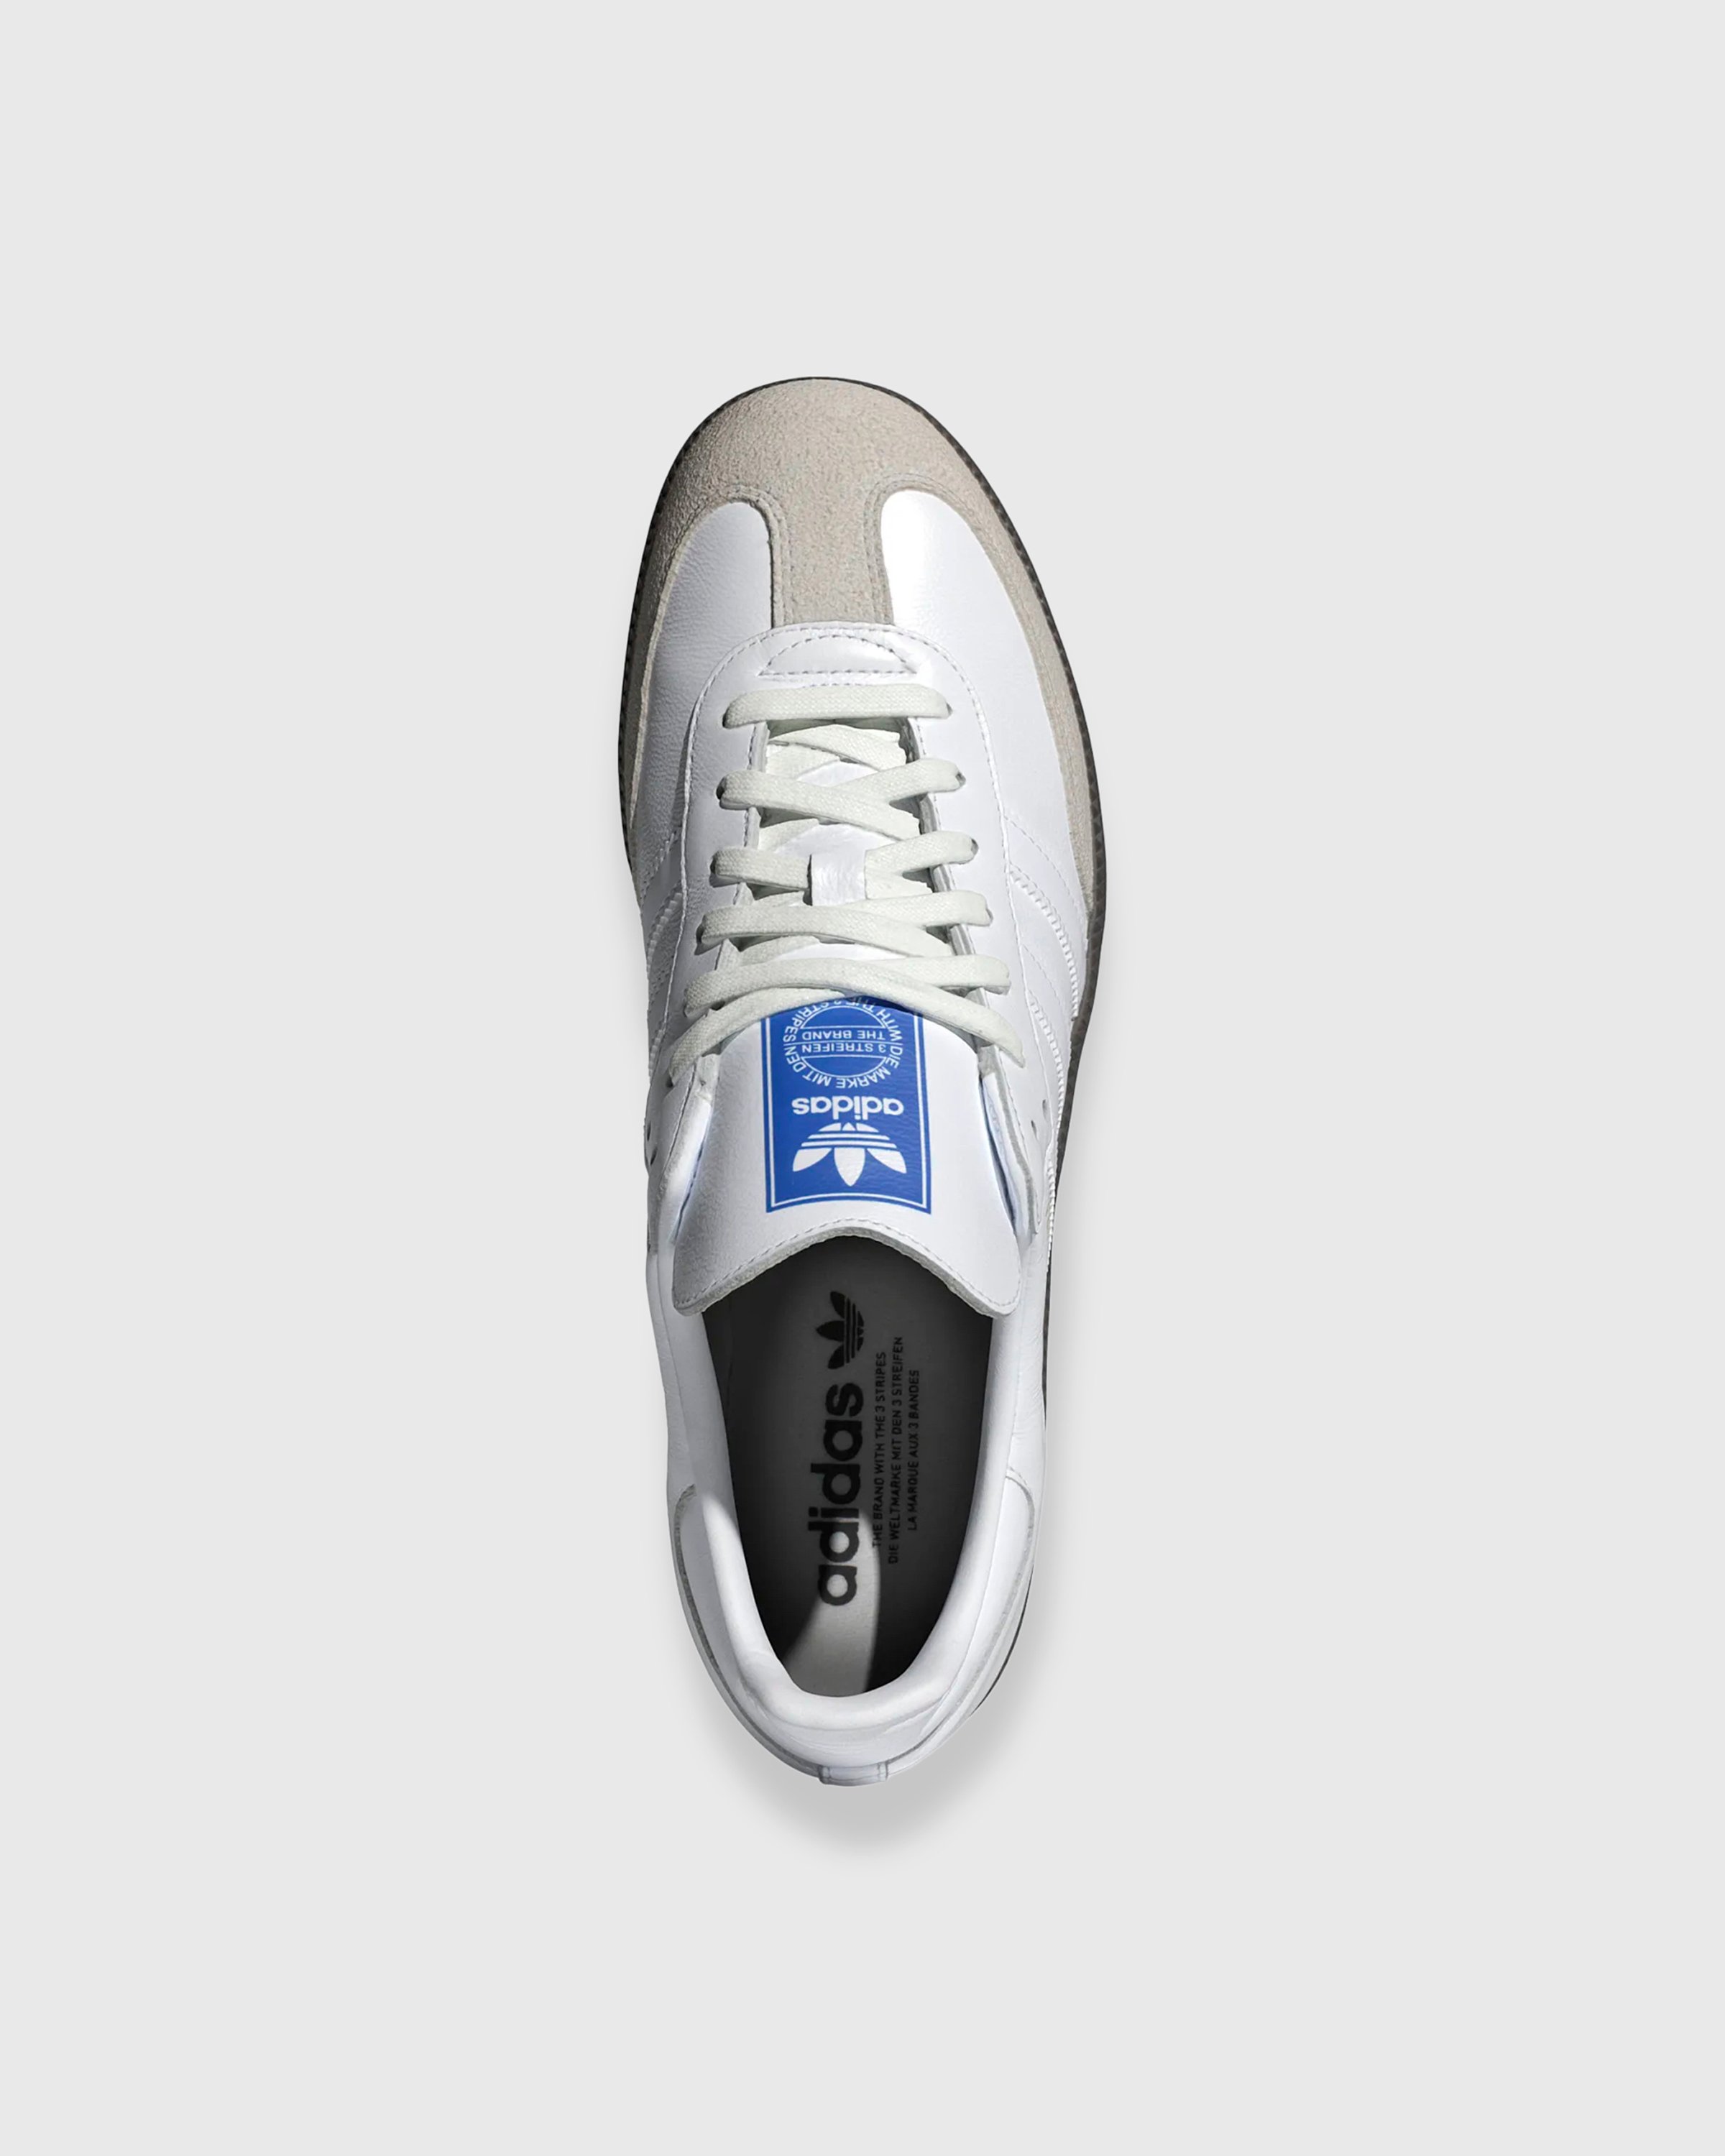 Adidas - SAMBA OG            FTWWHT/FTWWHT/GUM5 - Footwear - White - Image 5